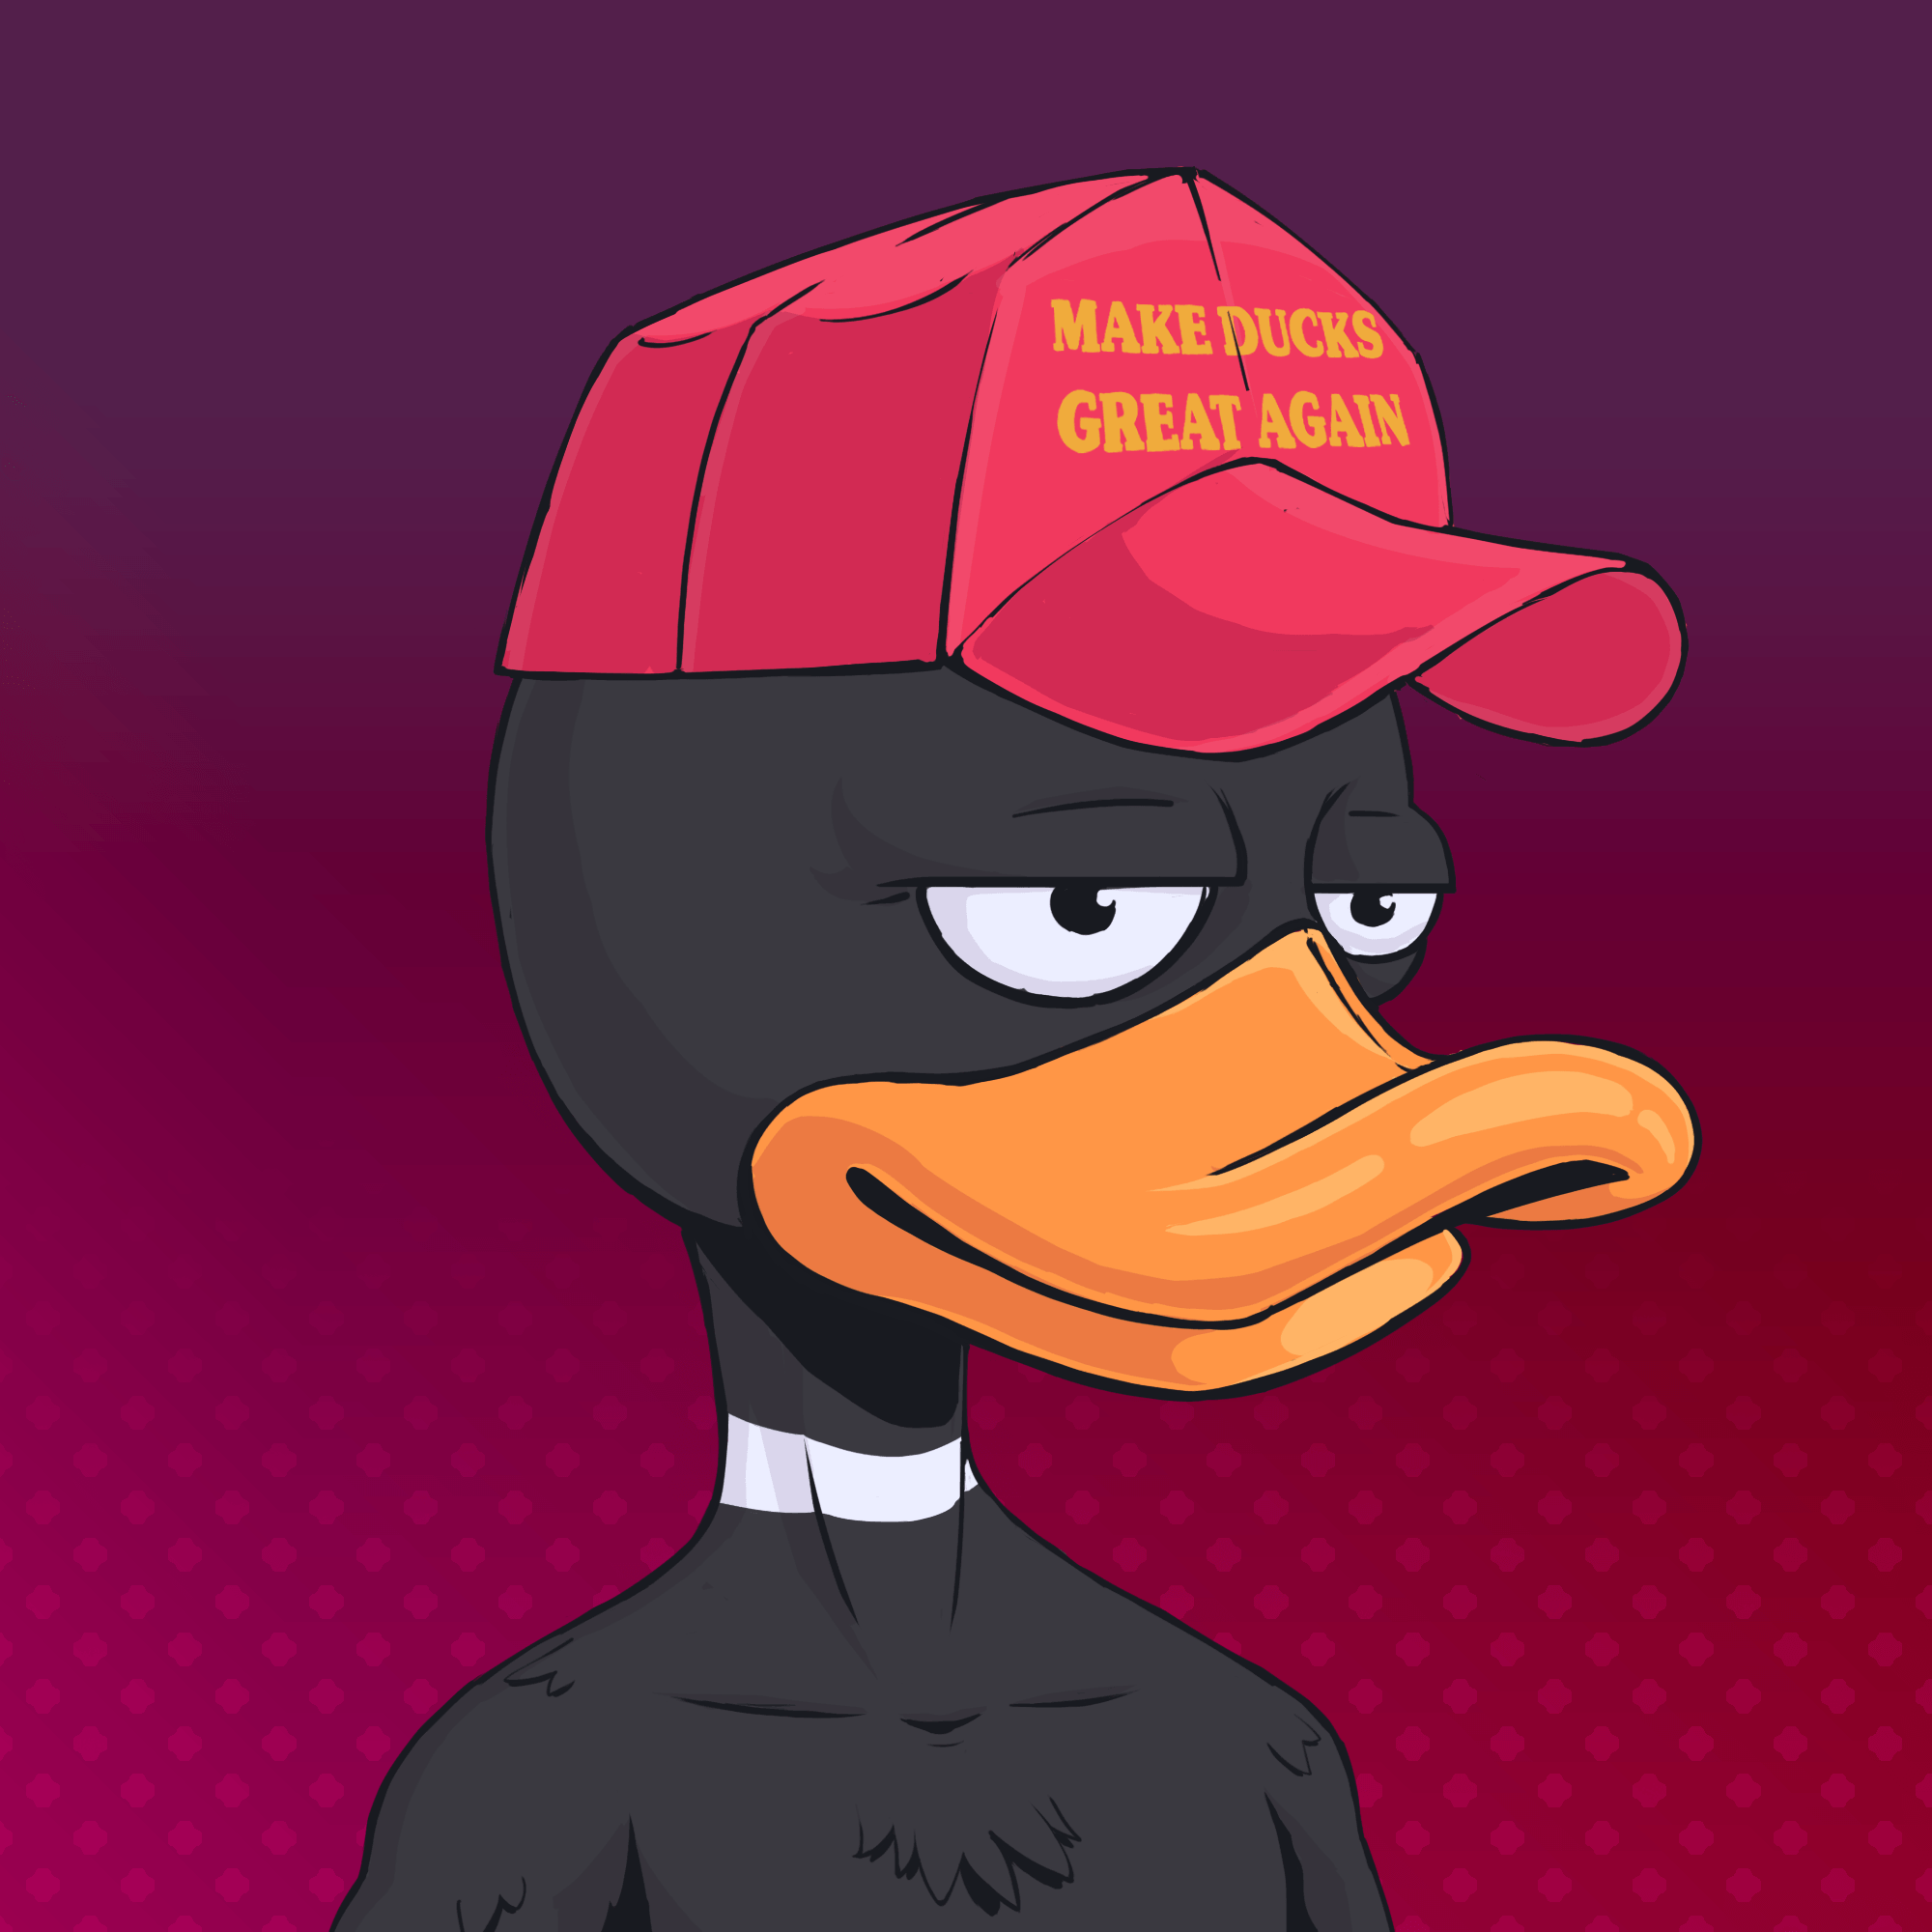 Duck #215